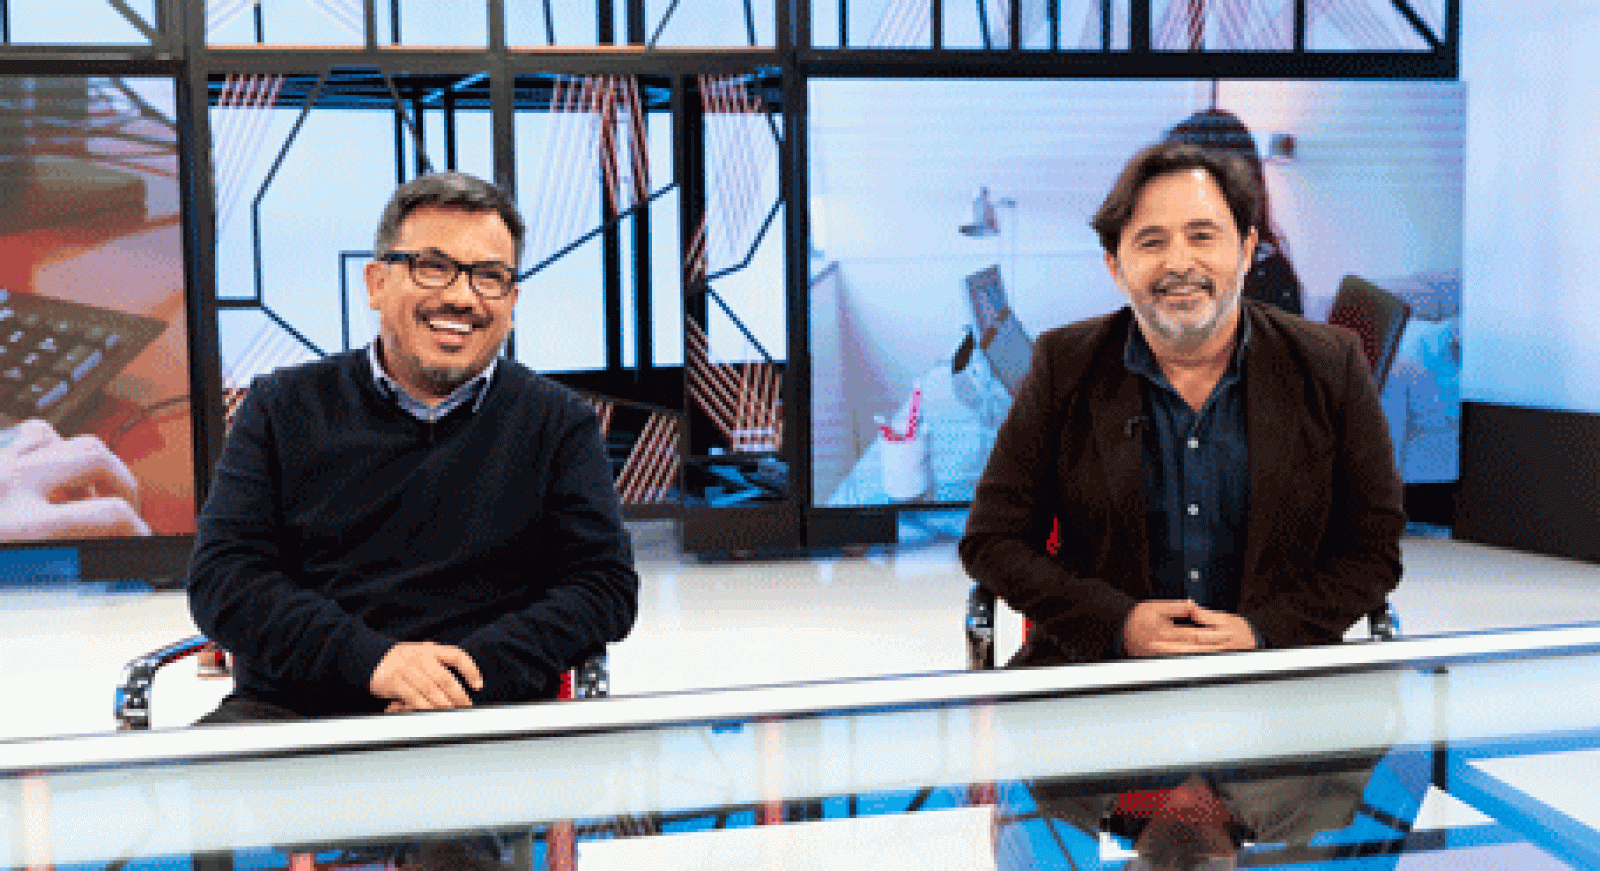 La aventura del saber - Con los comunicadores audiovisuales Marcelo López y Óscar Toro.